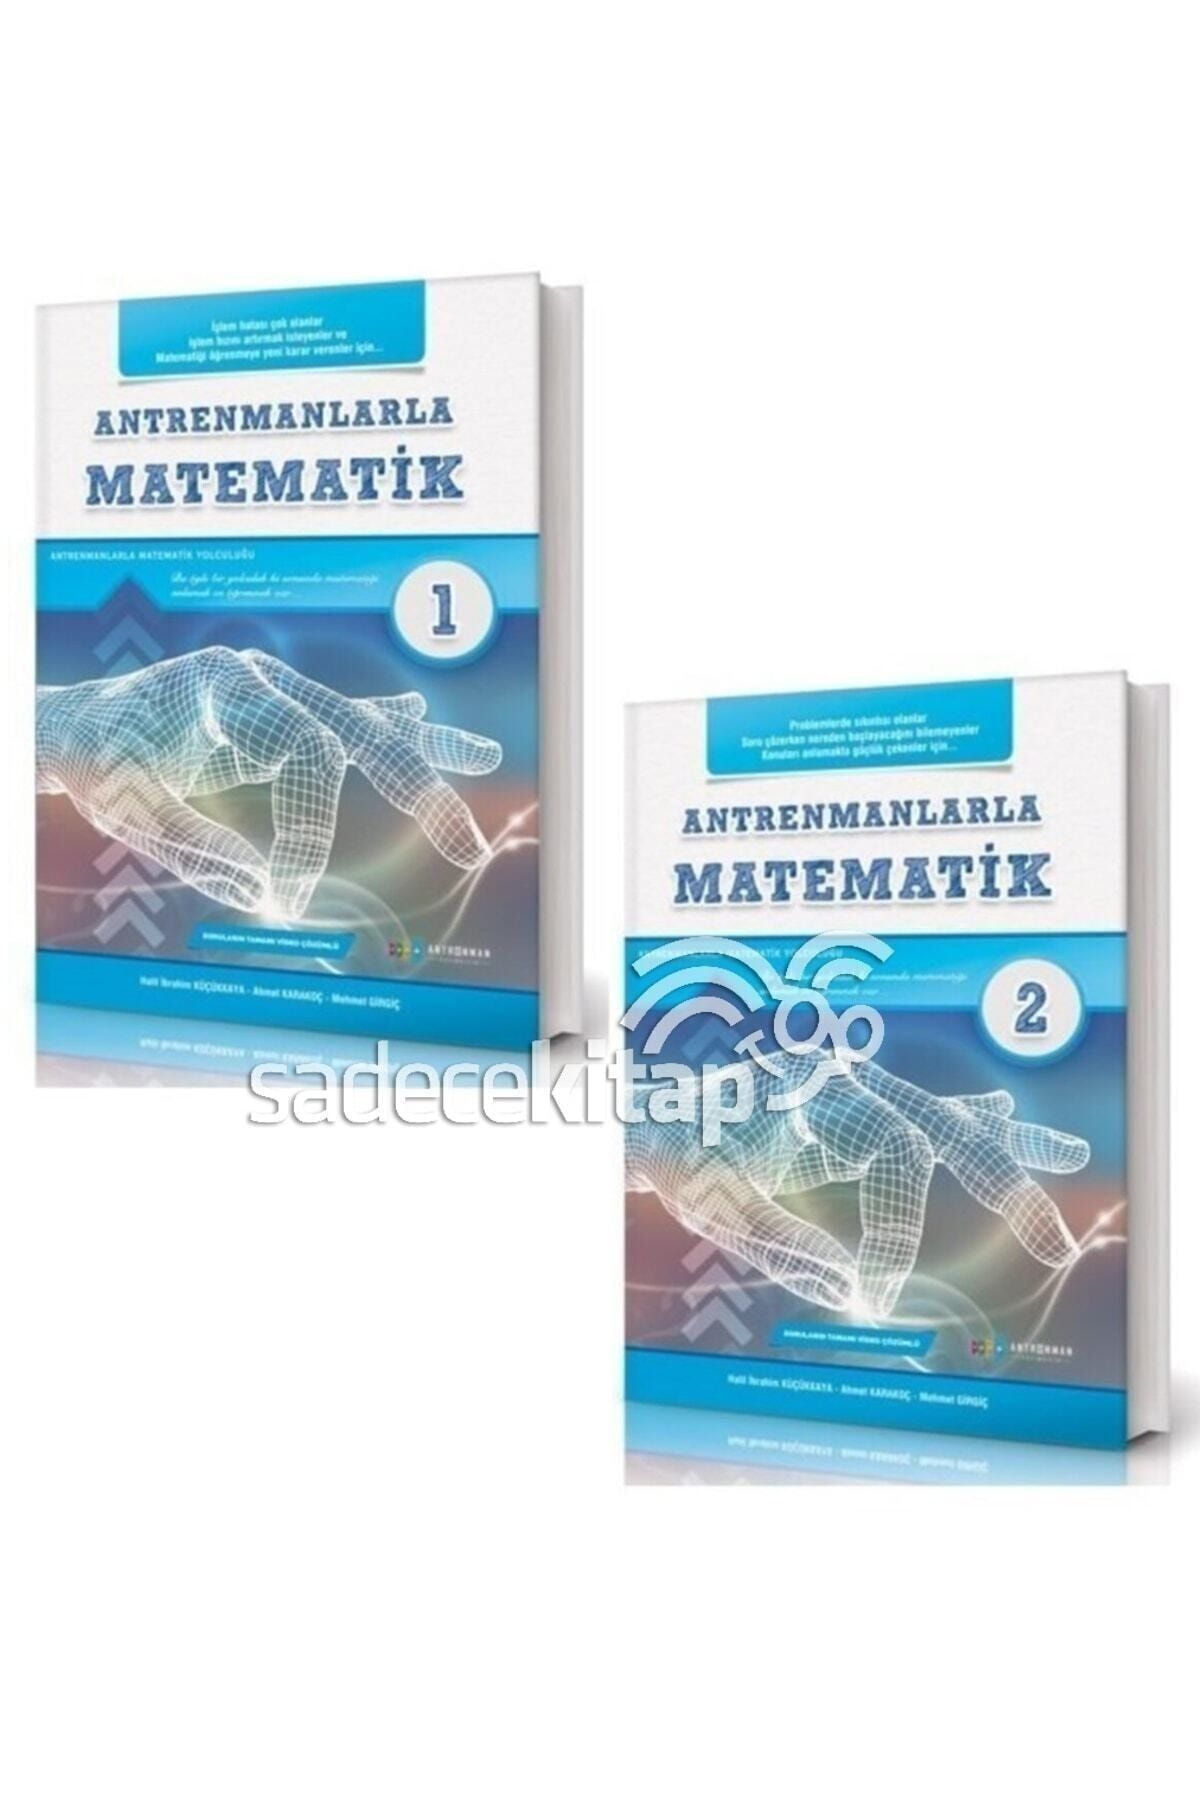 Antrenman Yayınları Antrenmanlarla Matematik 1-2 Set 2 Kitap